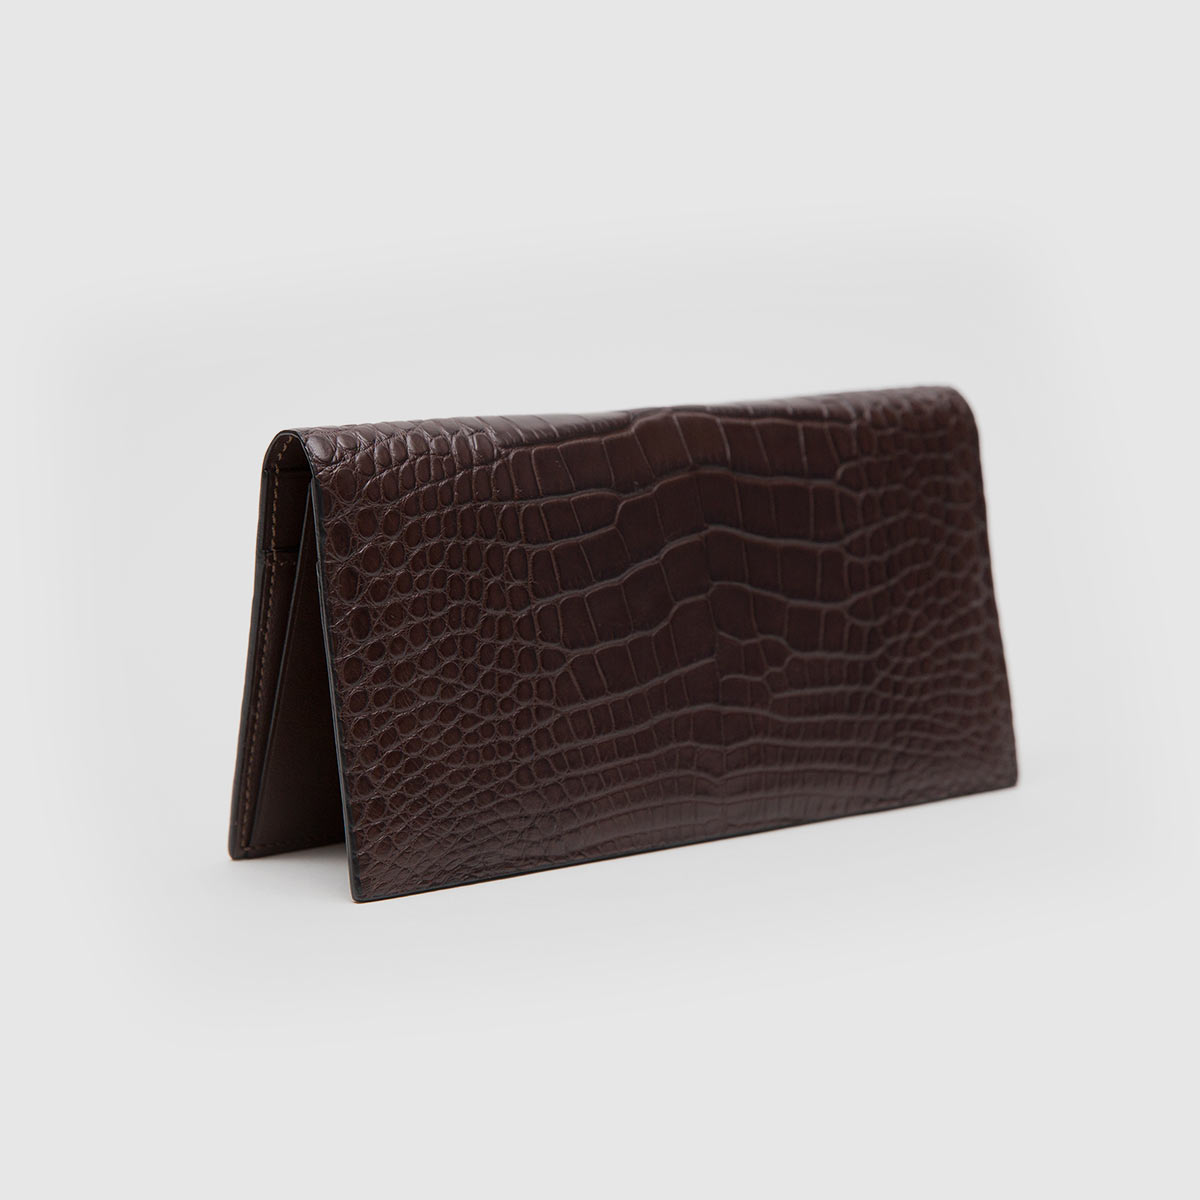 Vertical wallet in genuine brown Crocodile leather